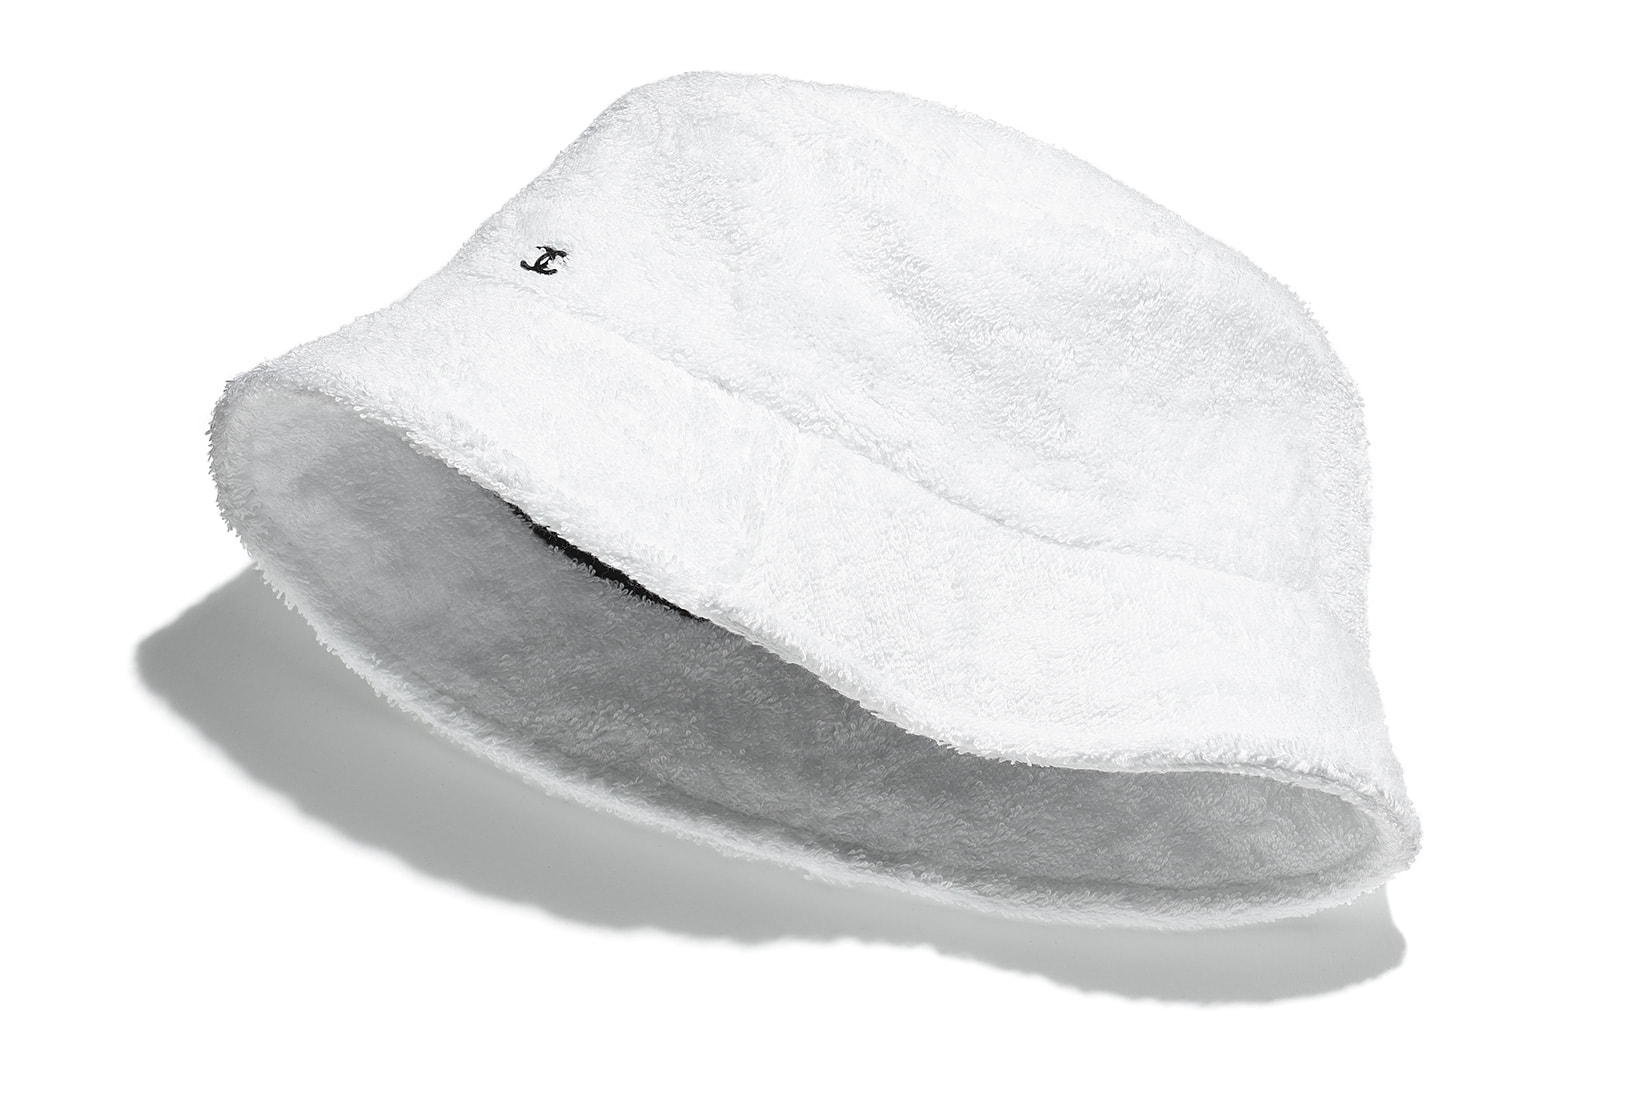 Chanel Bucket Hats for Cruise 2020/21 Season